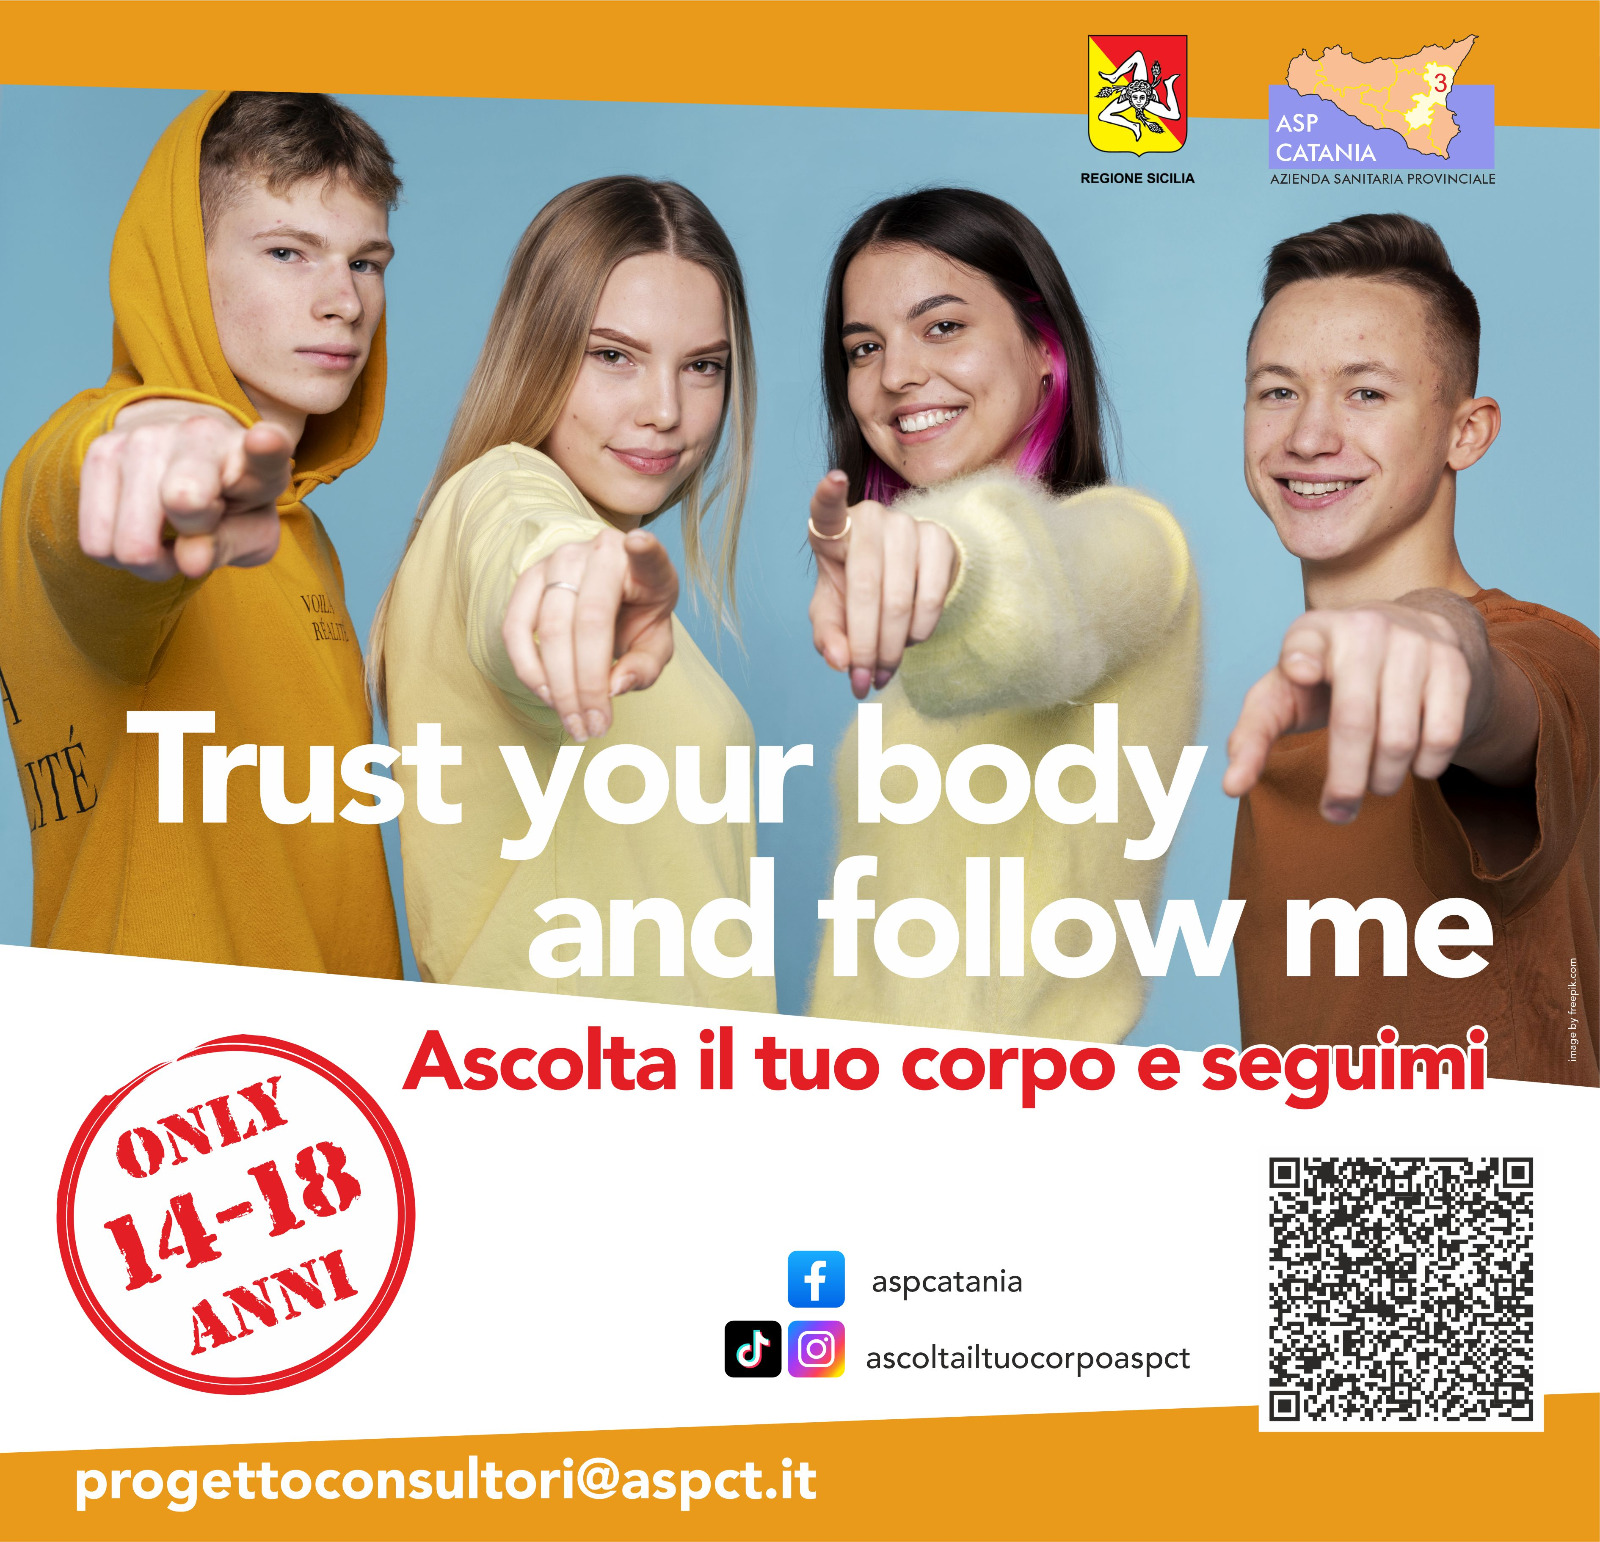 Ascolta il tuo corpo e seguimi! Il progetto dell’Asp di Catania